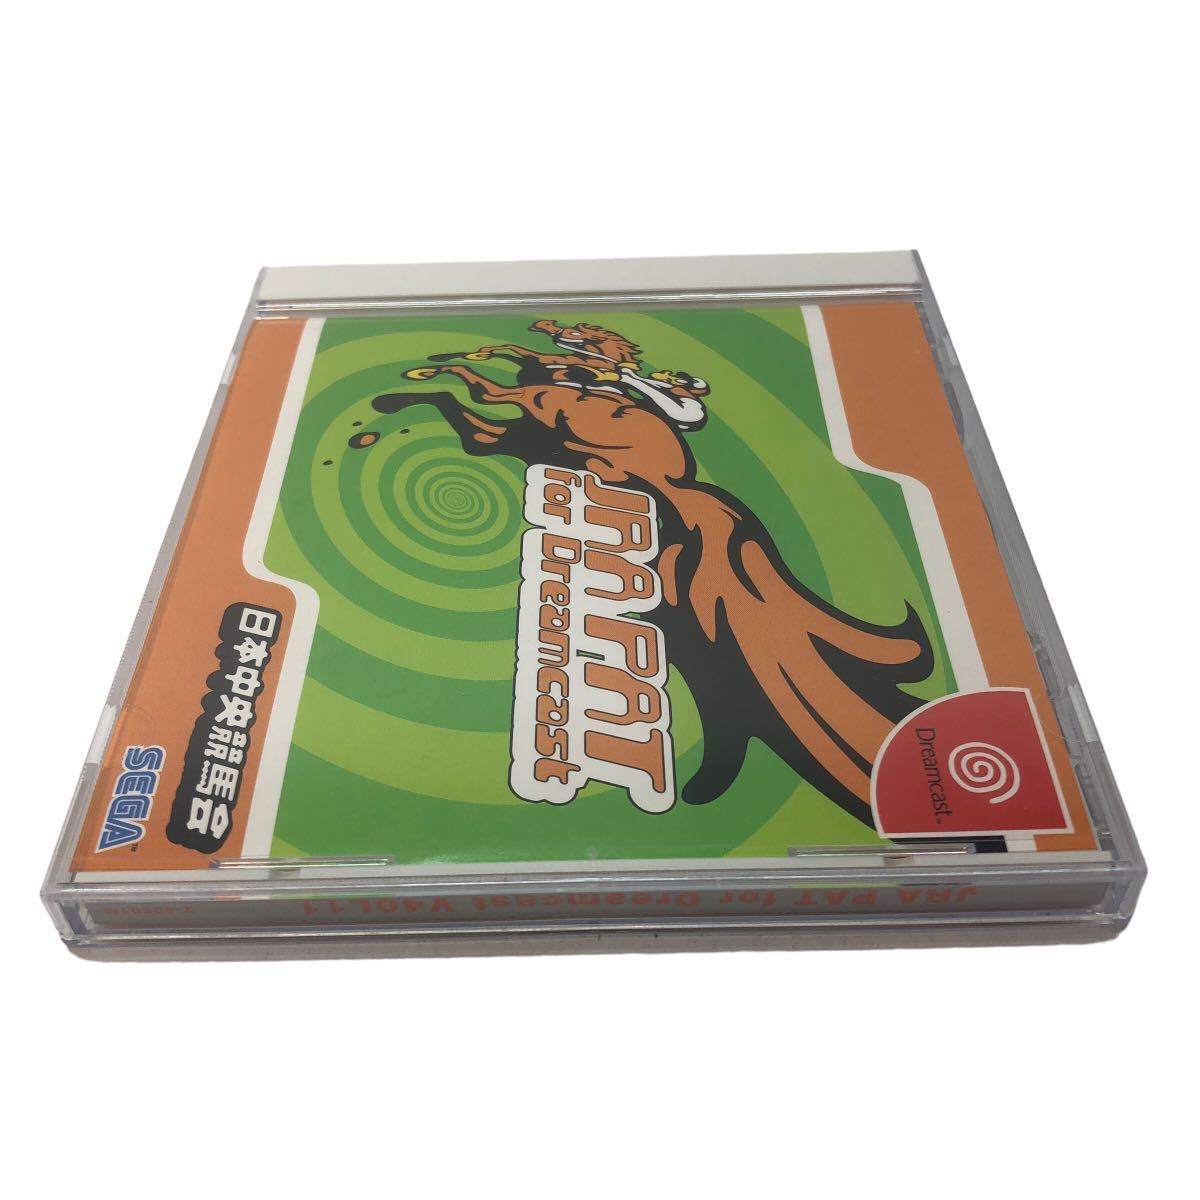 DC ドリームキャスト ソフト JRA PAT for Dreamcast 日本中央競馬会_画像4